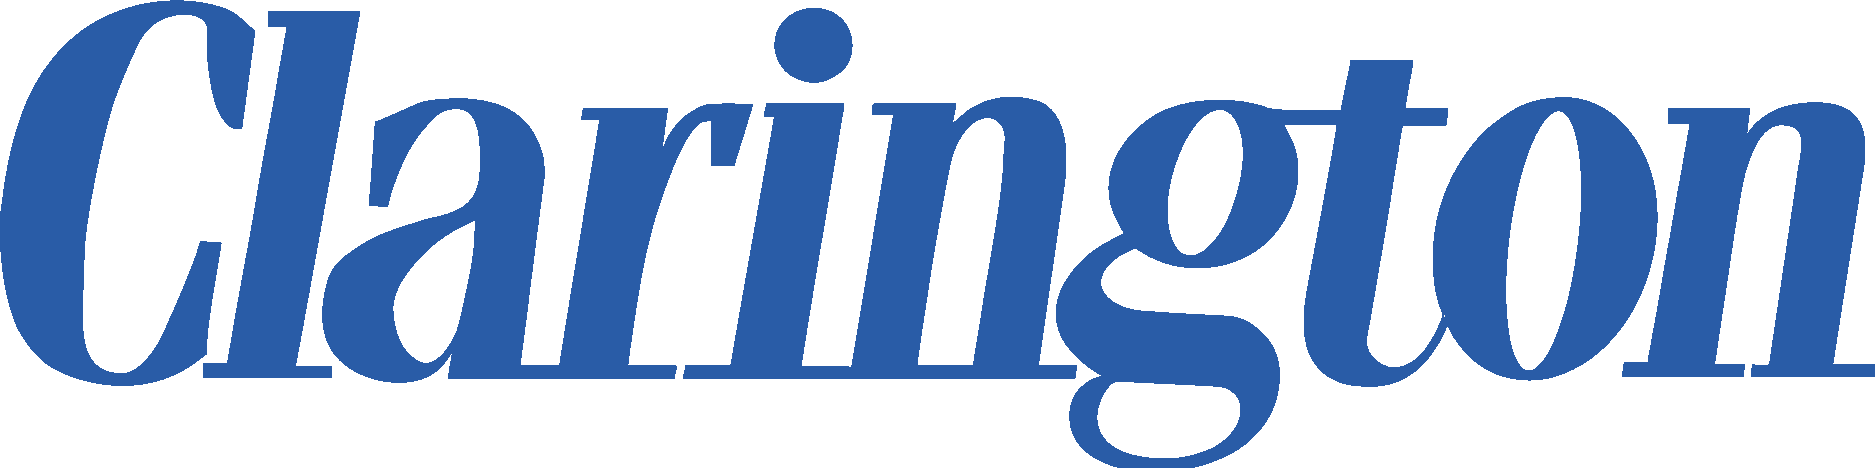 Clarington Logo Vector